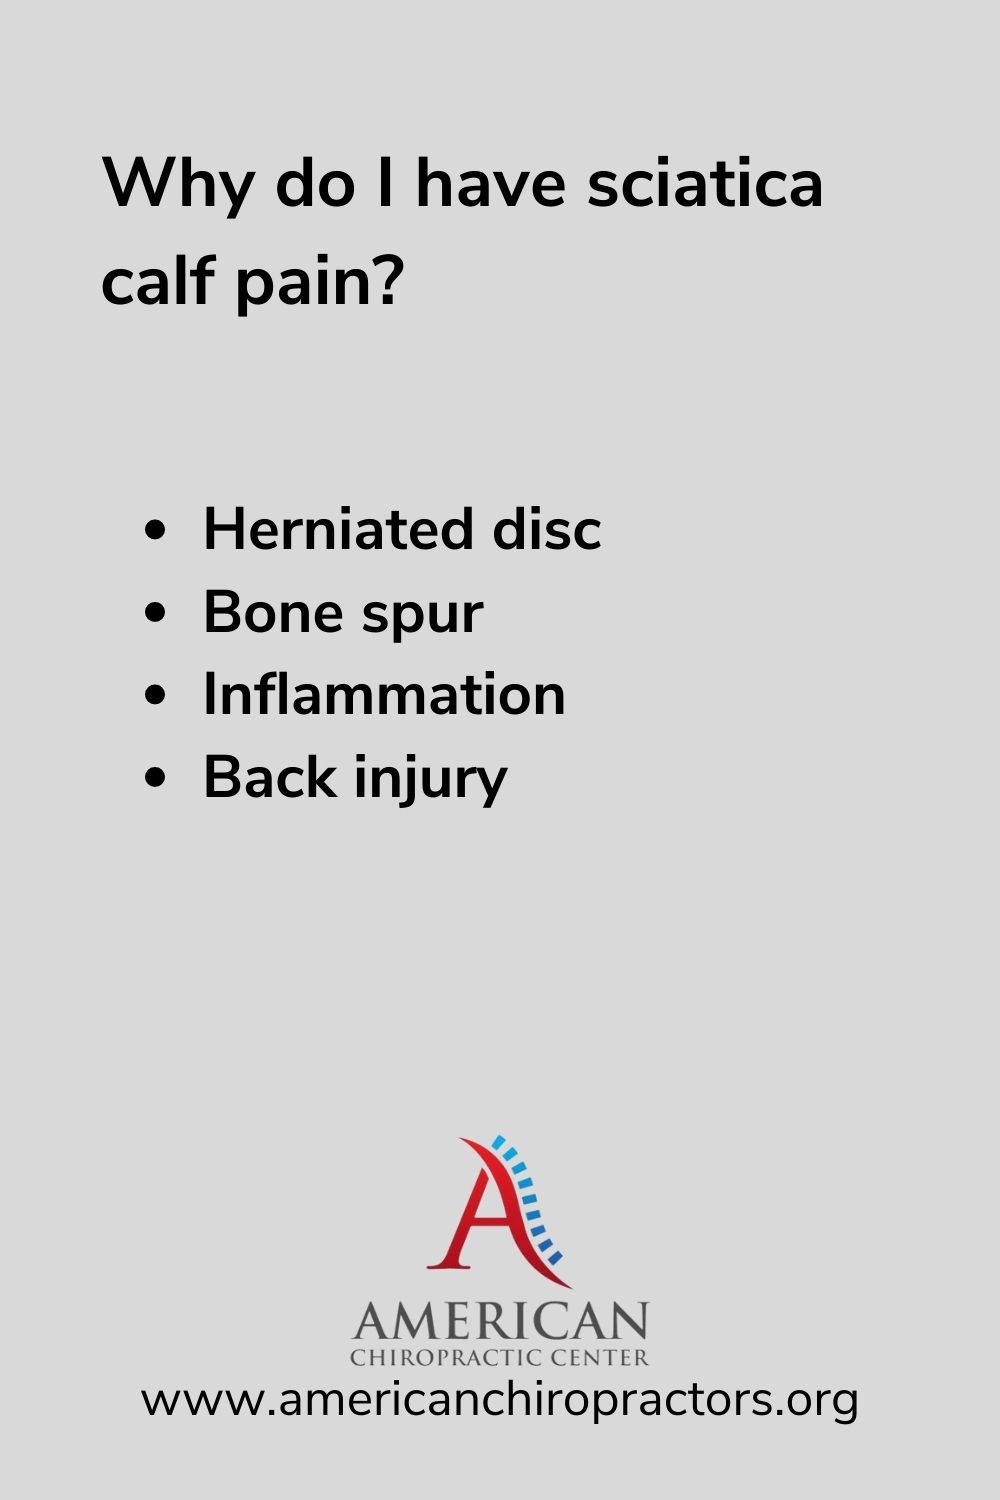 sciatica calf pain